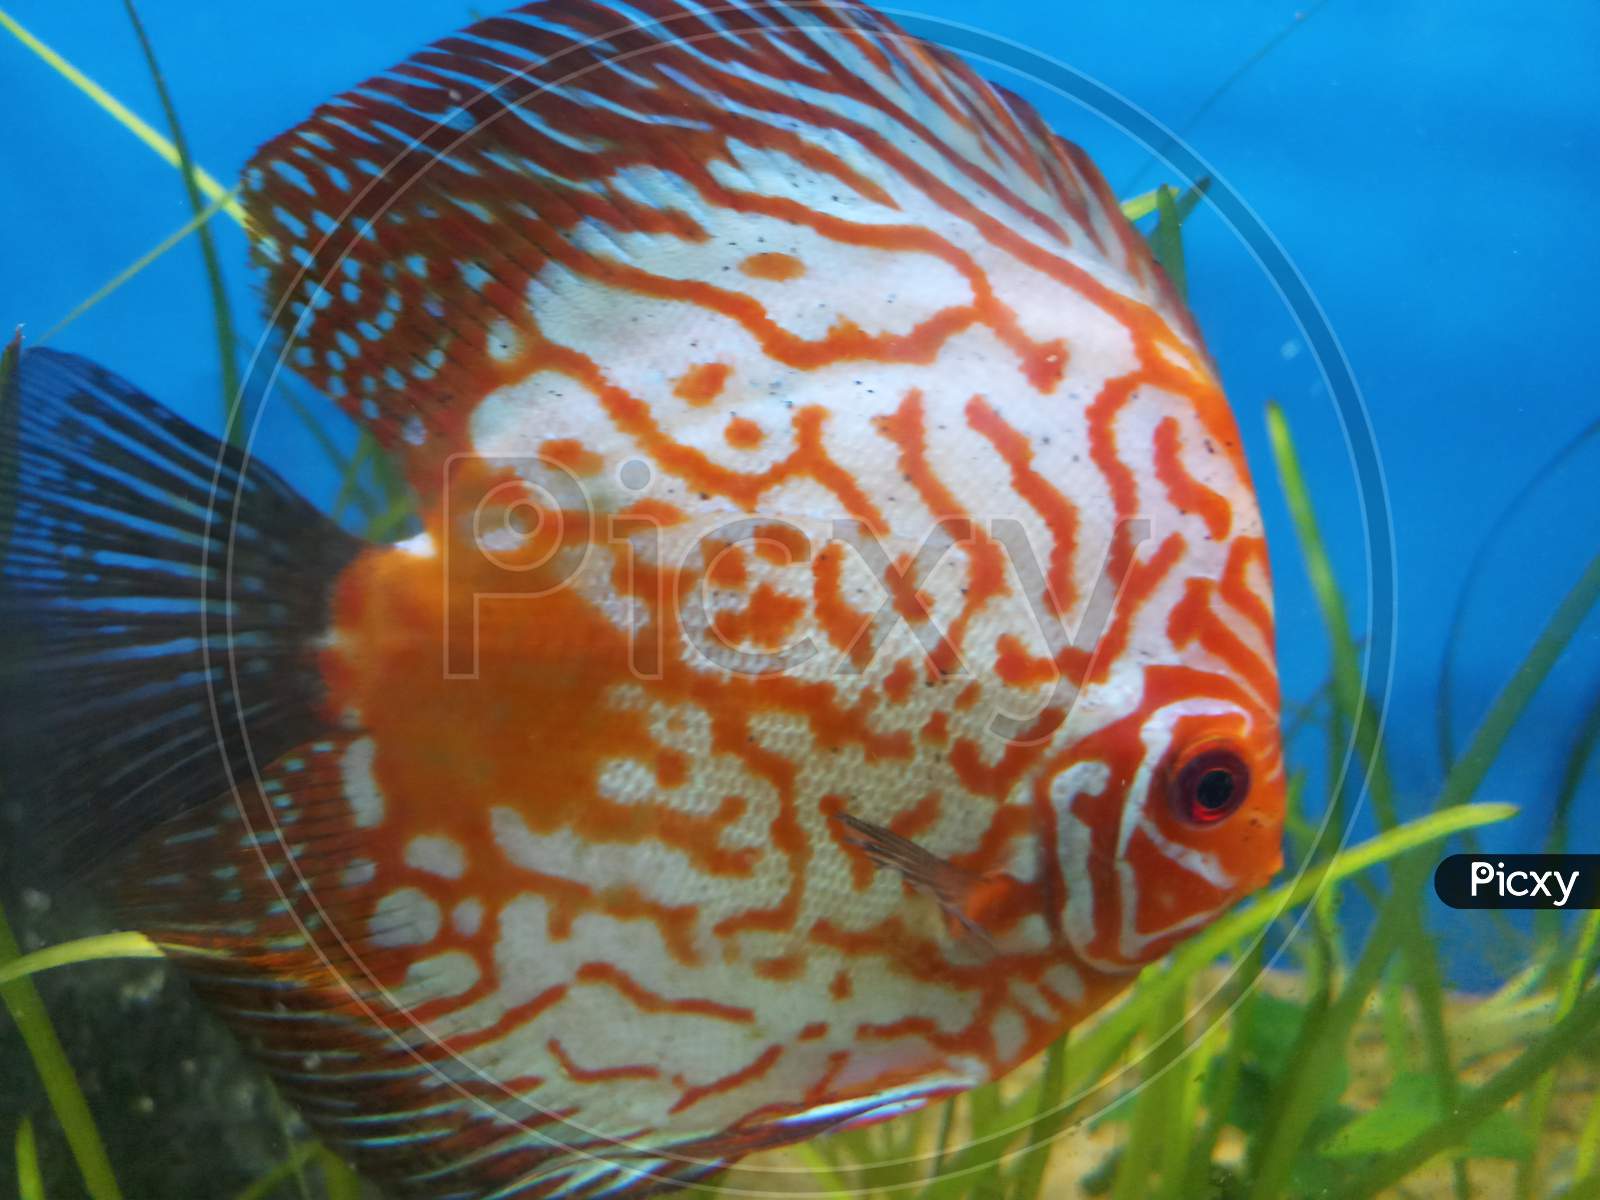 Checkerboard discus fish in the aquarium